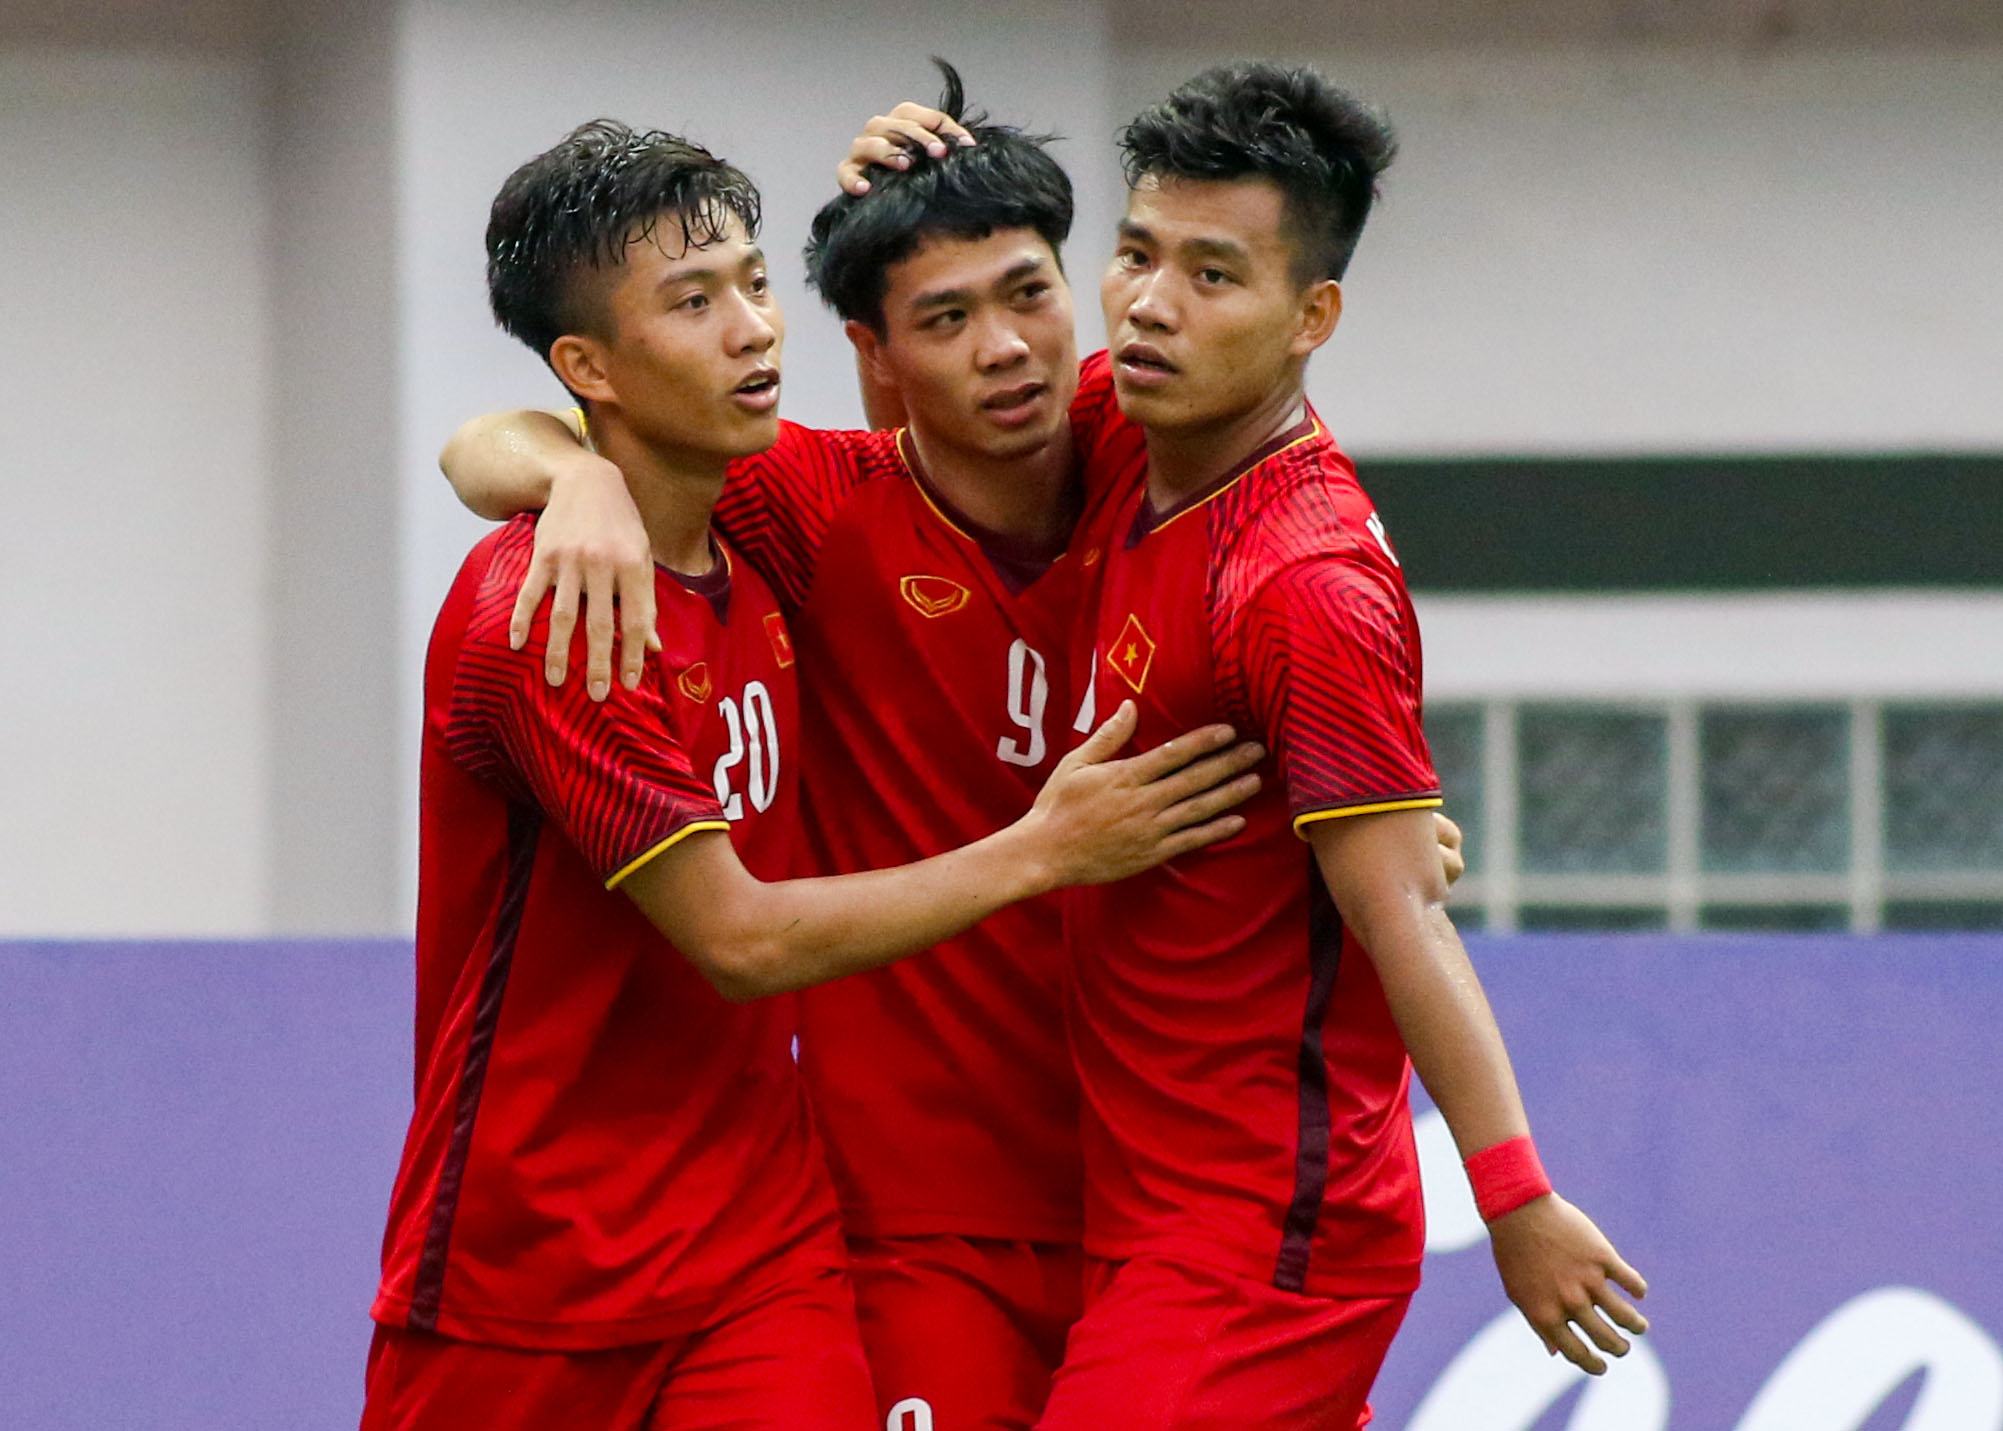 NÓNG: Đã mua bản quyền ASIAD 2018, fan được xem U23 Việt Nam từ vòng 1/8 - Bóng Đá